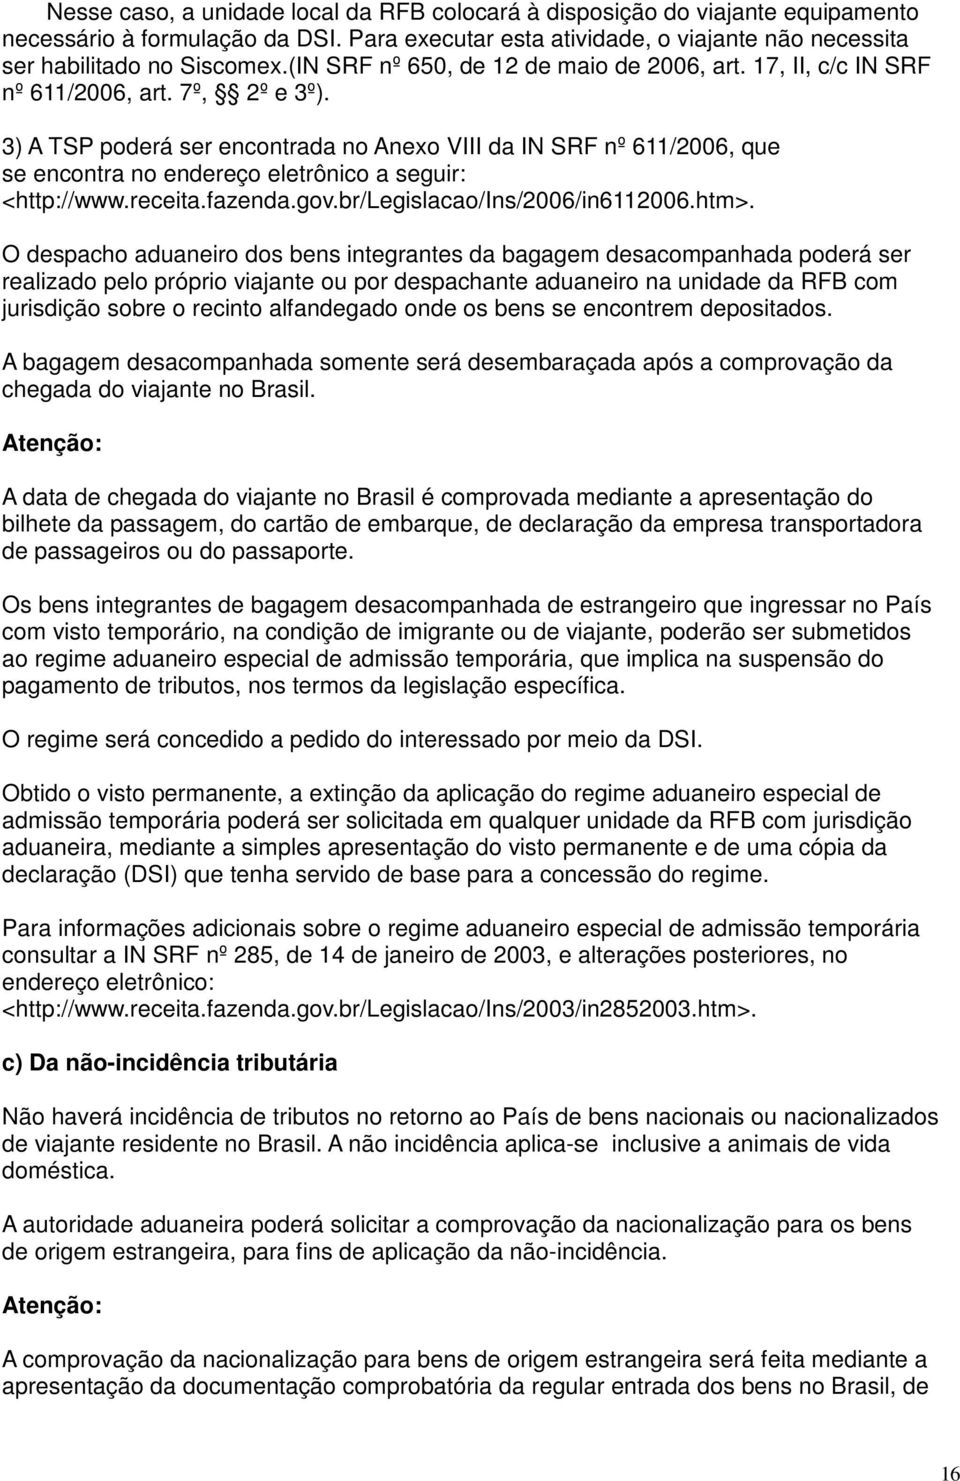 3) A TSP poderá ser encontrada no Anexo VIII da IN SRF nº 611/2006, que se encontra no endereço eletrônico a seguir: <http://www.receita.fazenda.gov.br/legislacao/ins/2006/in6112006.htm>.